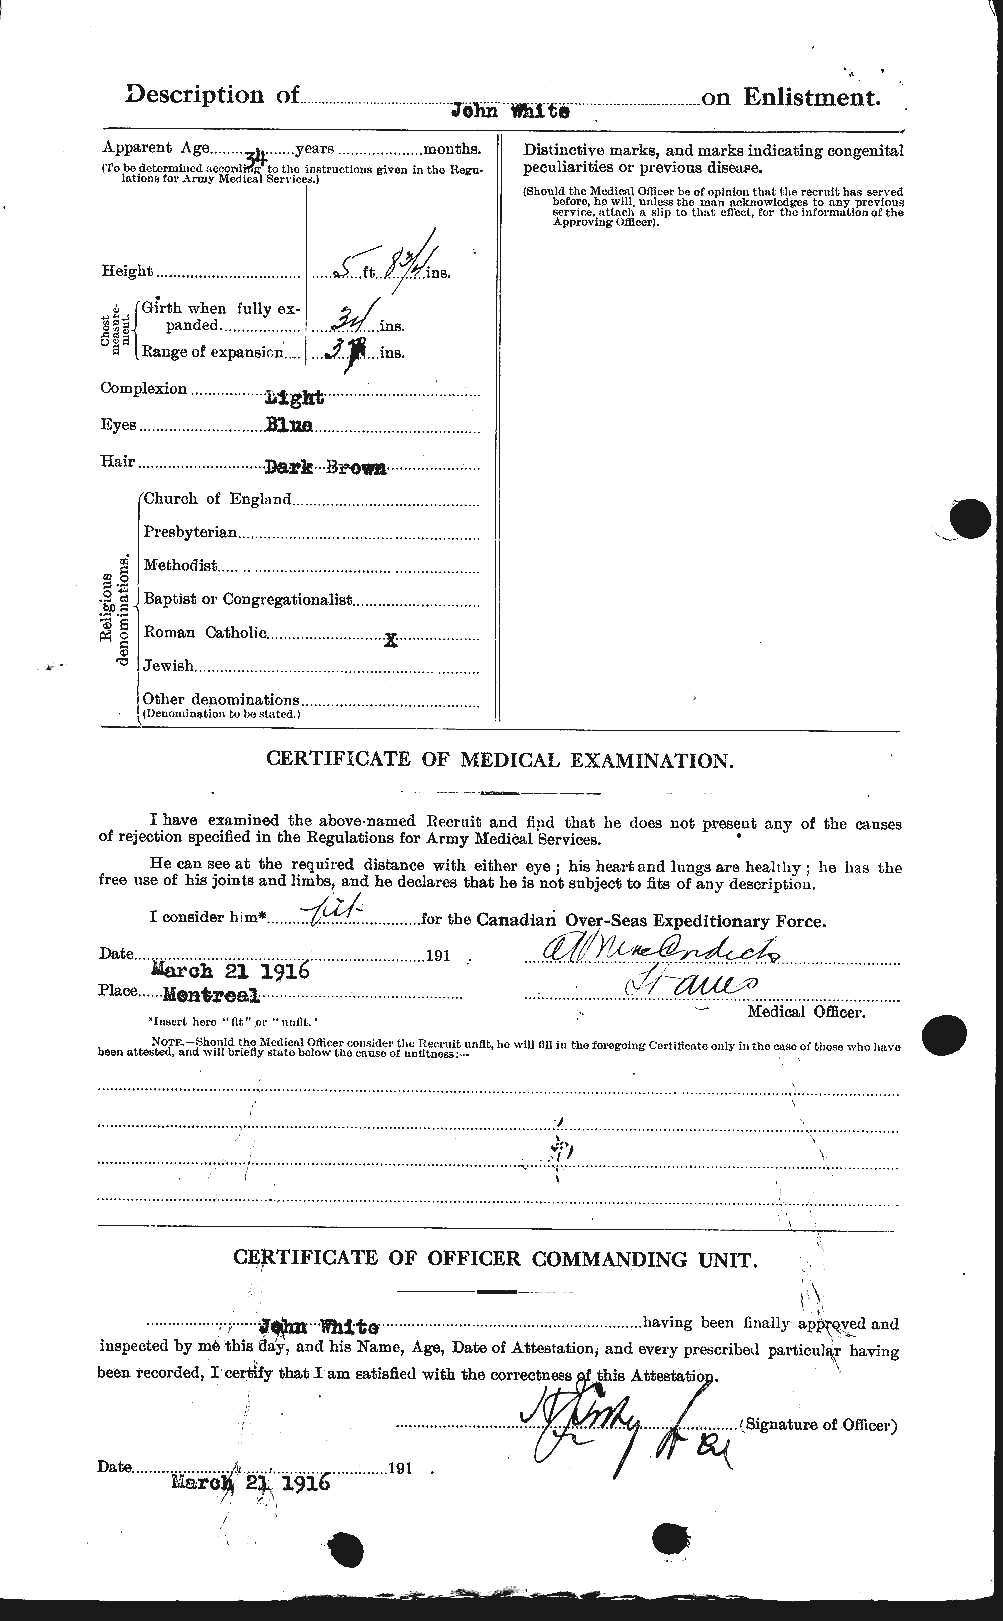 Dossiers du Personnel de la Première Guerre mondiale - CEC 671517b